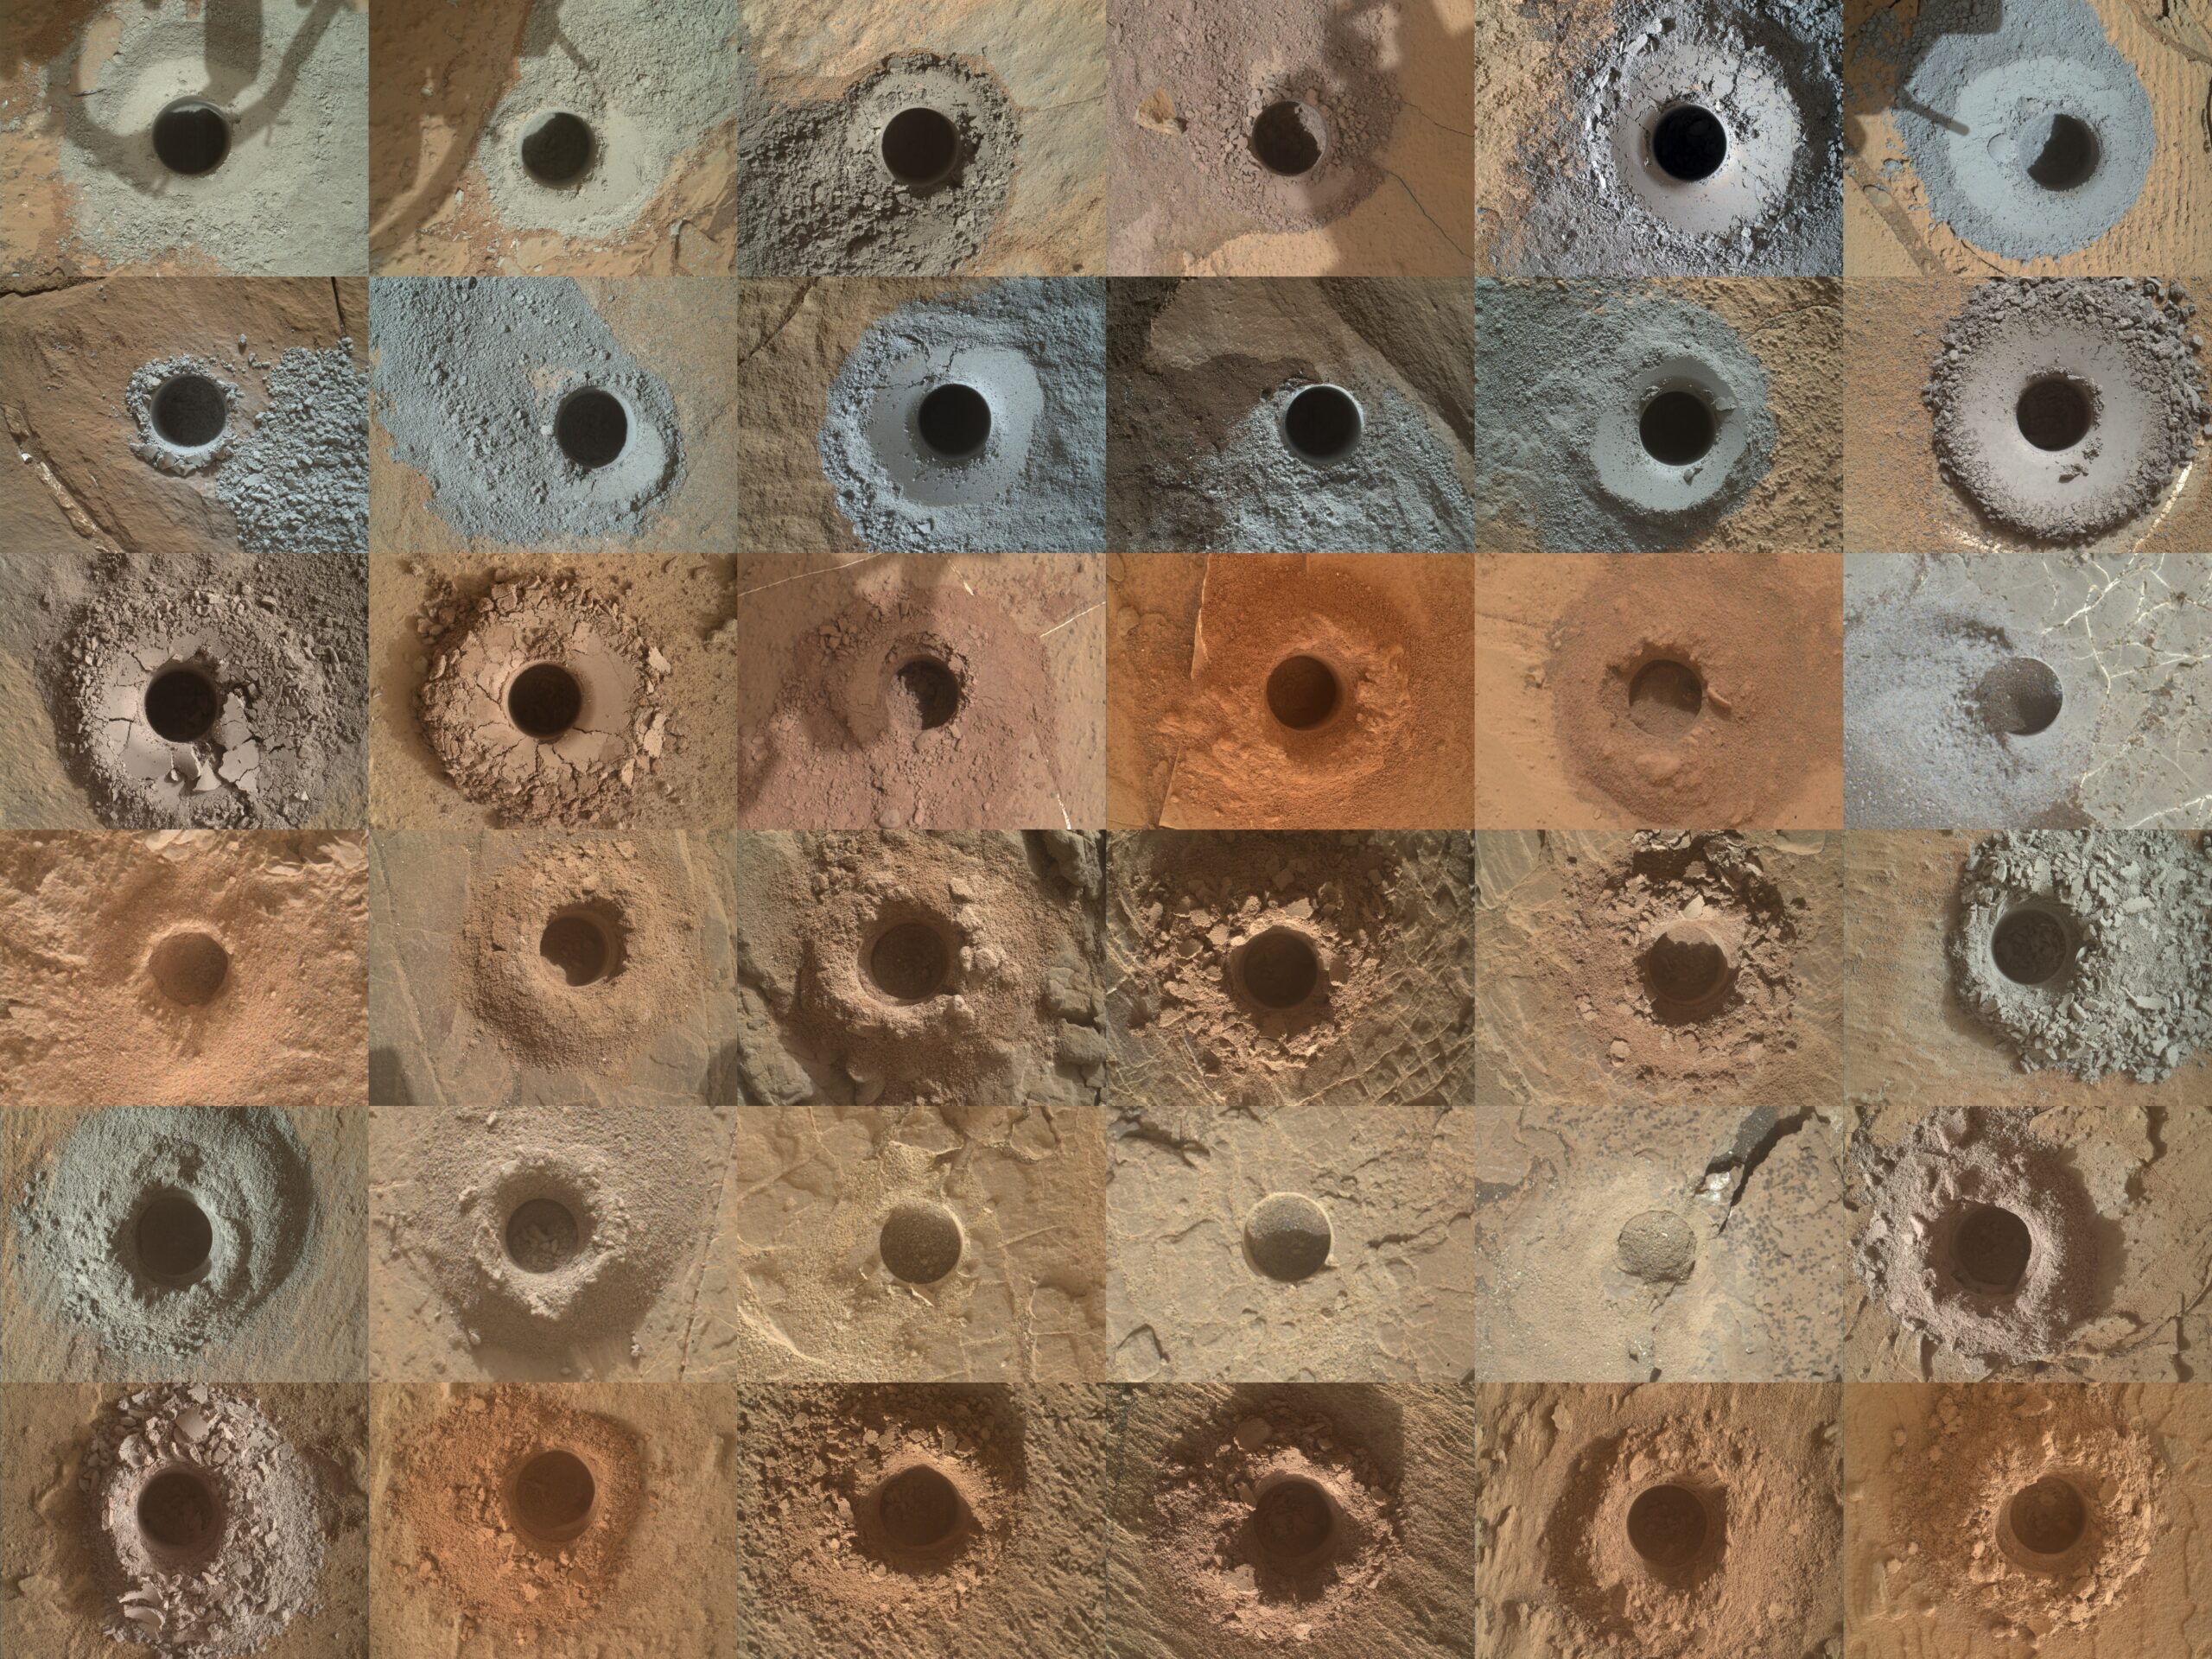 36 отверстий, просверленных марсоходом Curiosity: Эта сетка показывает все 36 отверстий, просверленных марсоходом НАСА Curiosity с помощью бура на конце роботизированной руки. Марсоход анализирует порошкообразную породу, образовавшуюся в результате бурения. Изображения в сетке были сделаны марсоходом Mars Hand Lens Imager (MAHLI) на конце манипулятора Curiosity.